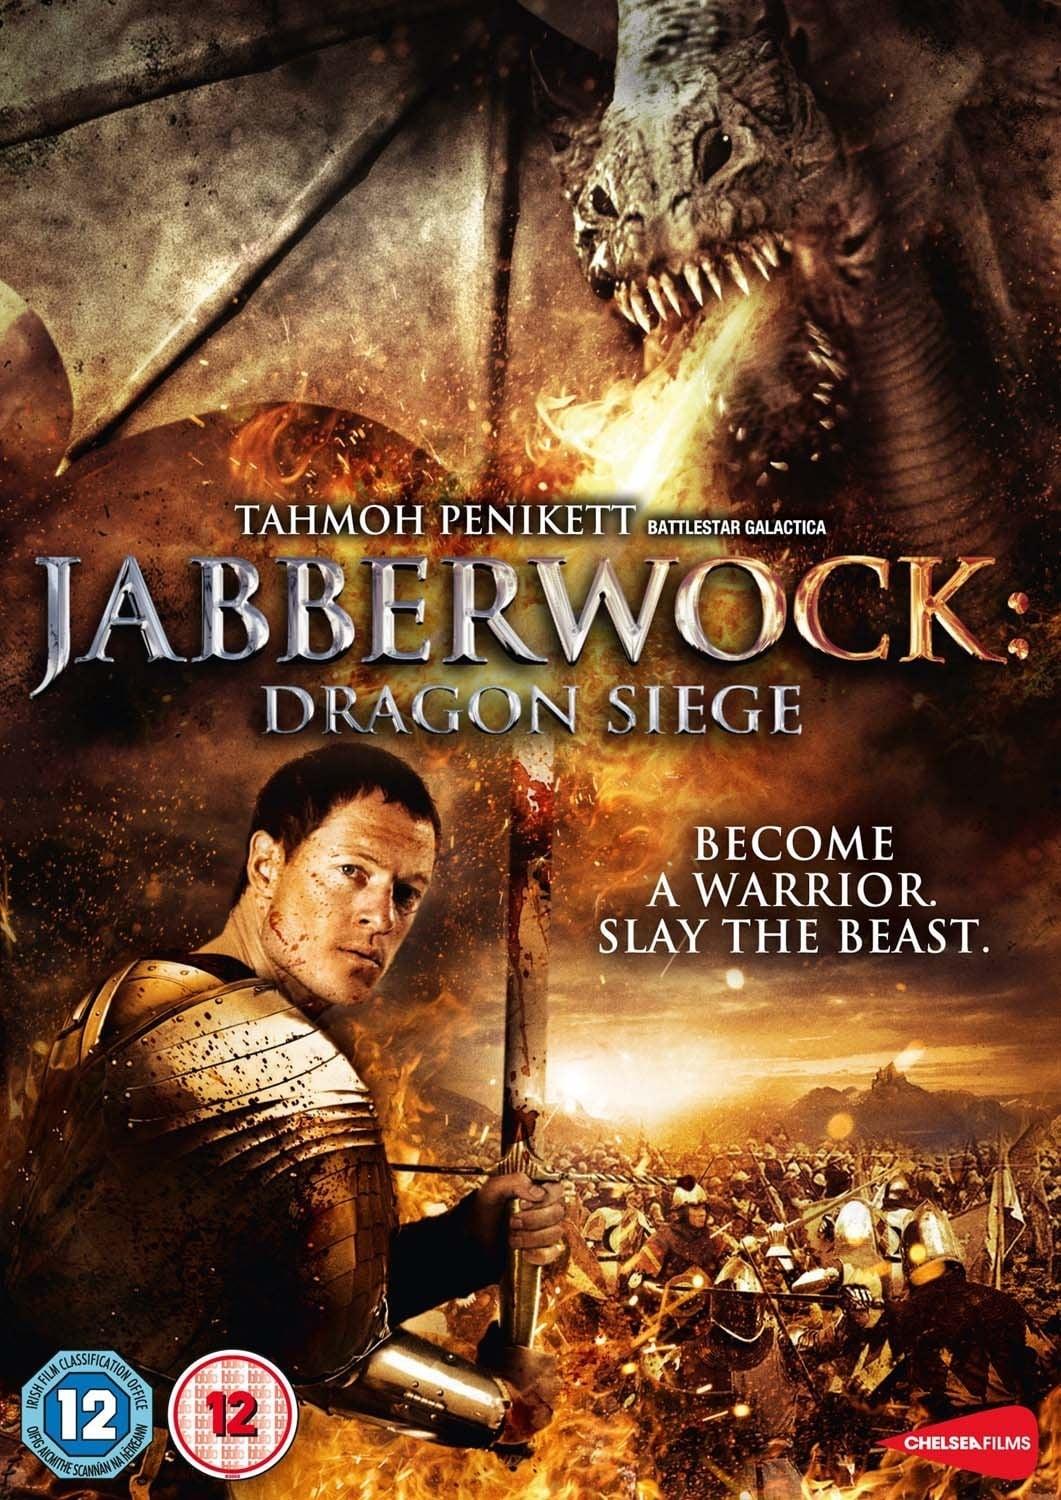 Jabberwock Dragon Siege poster